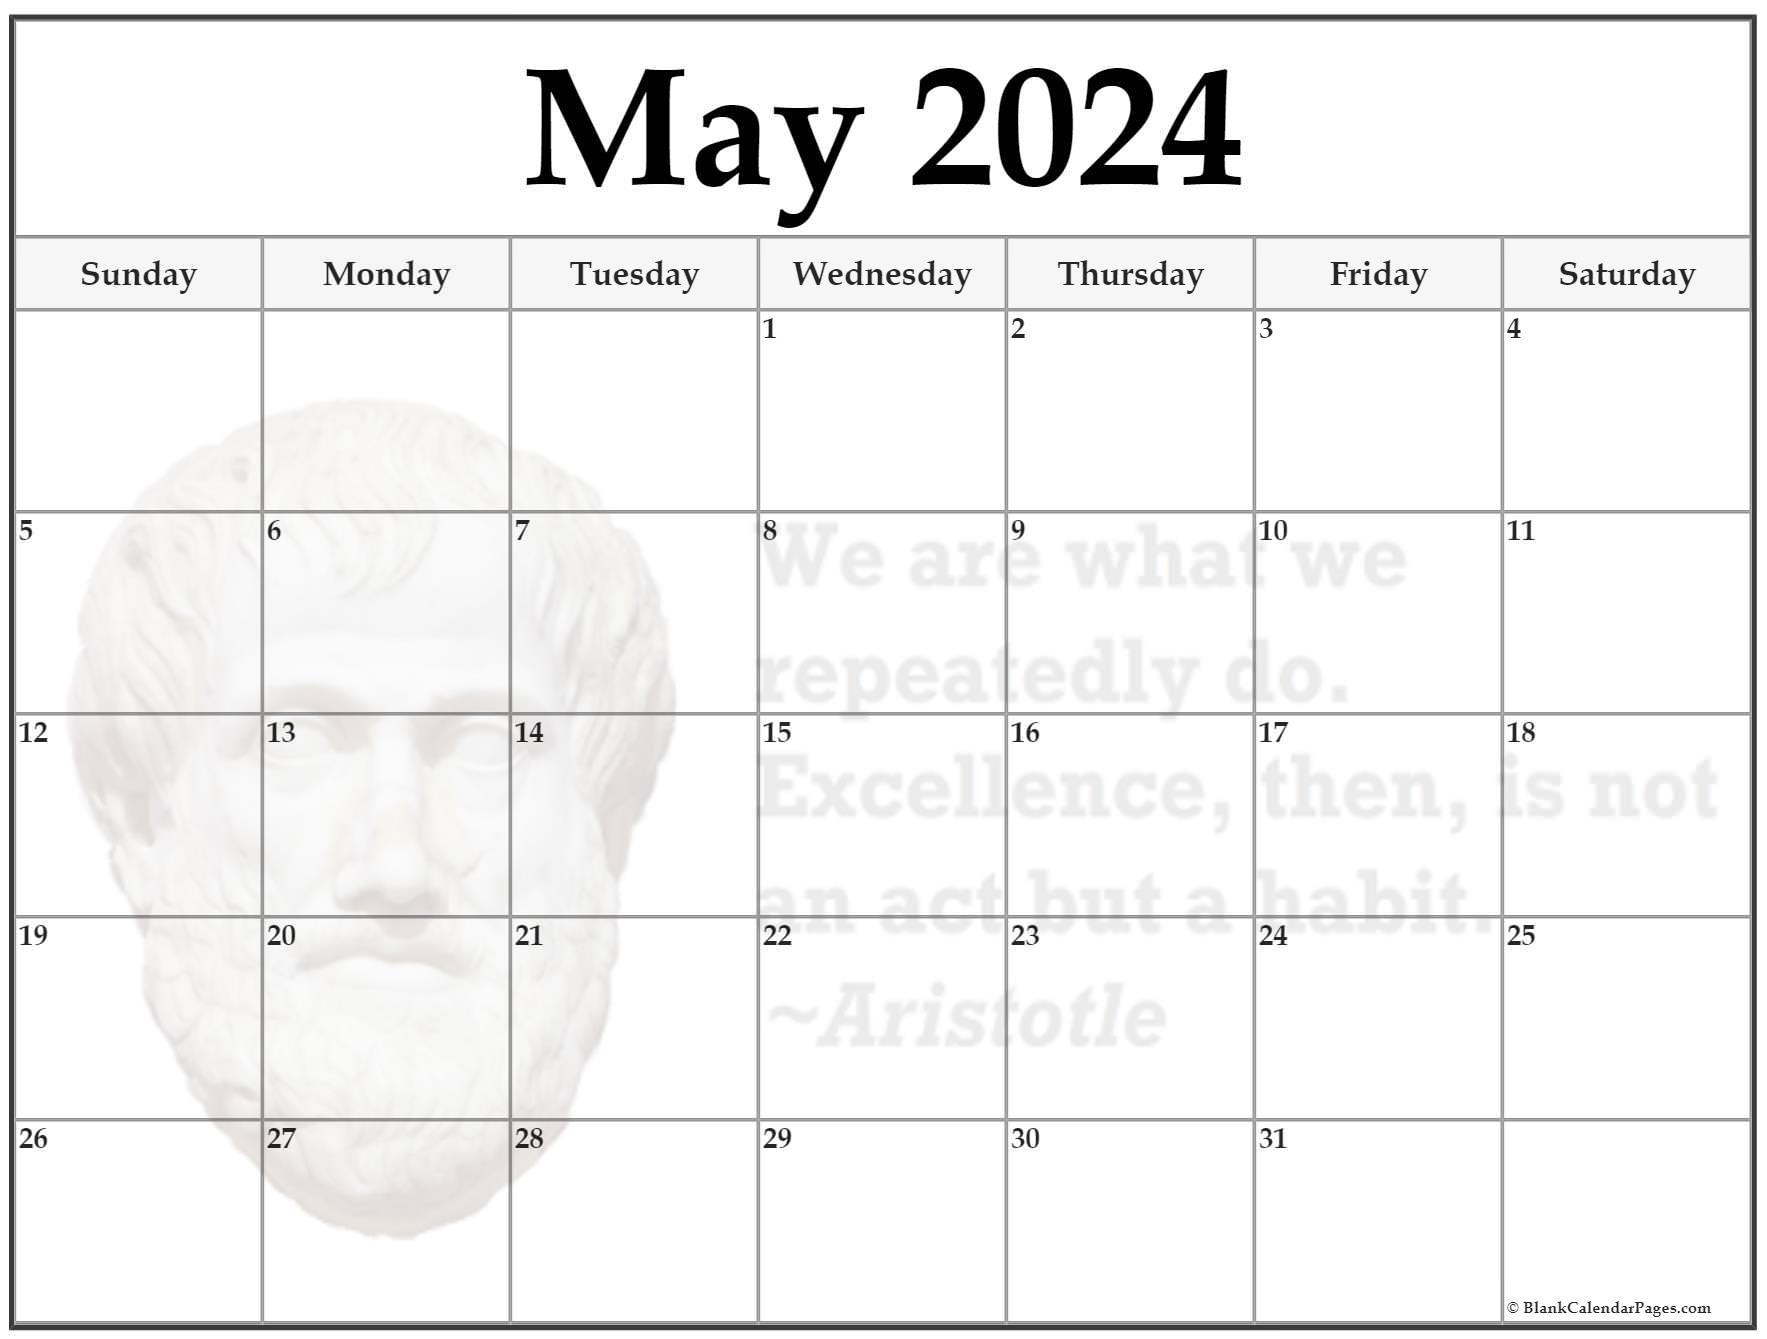 Праздники в мае 2024 г